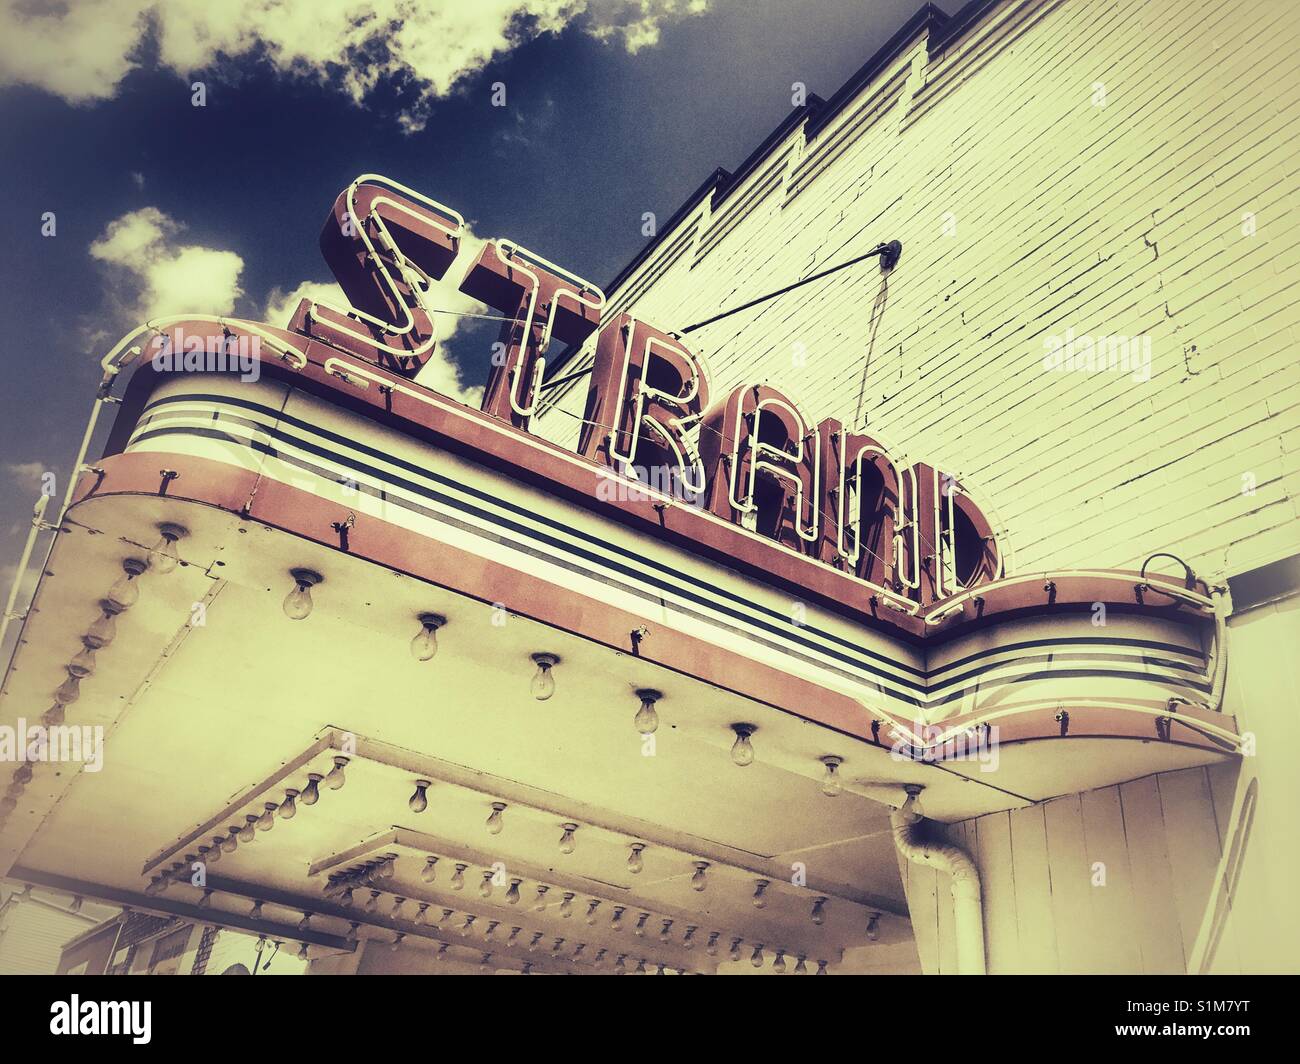 Strand Theatre marquee in Sebring, Ohio Stock Photo